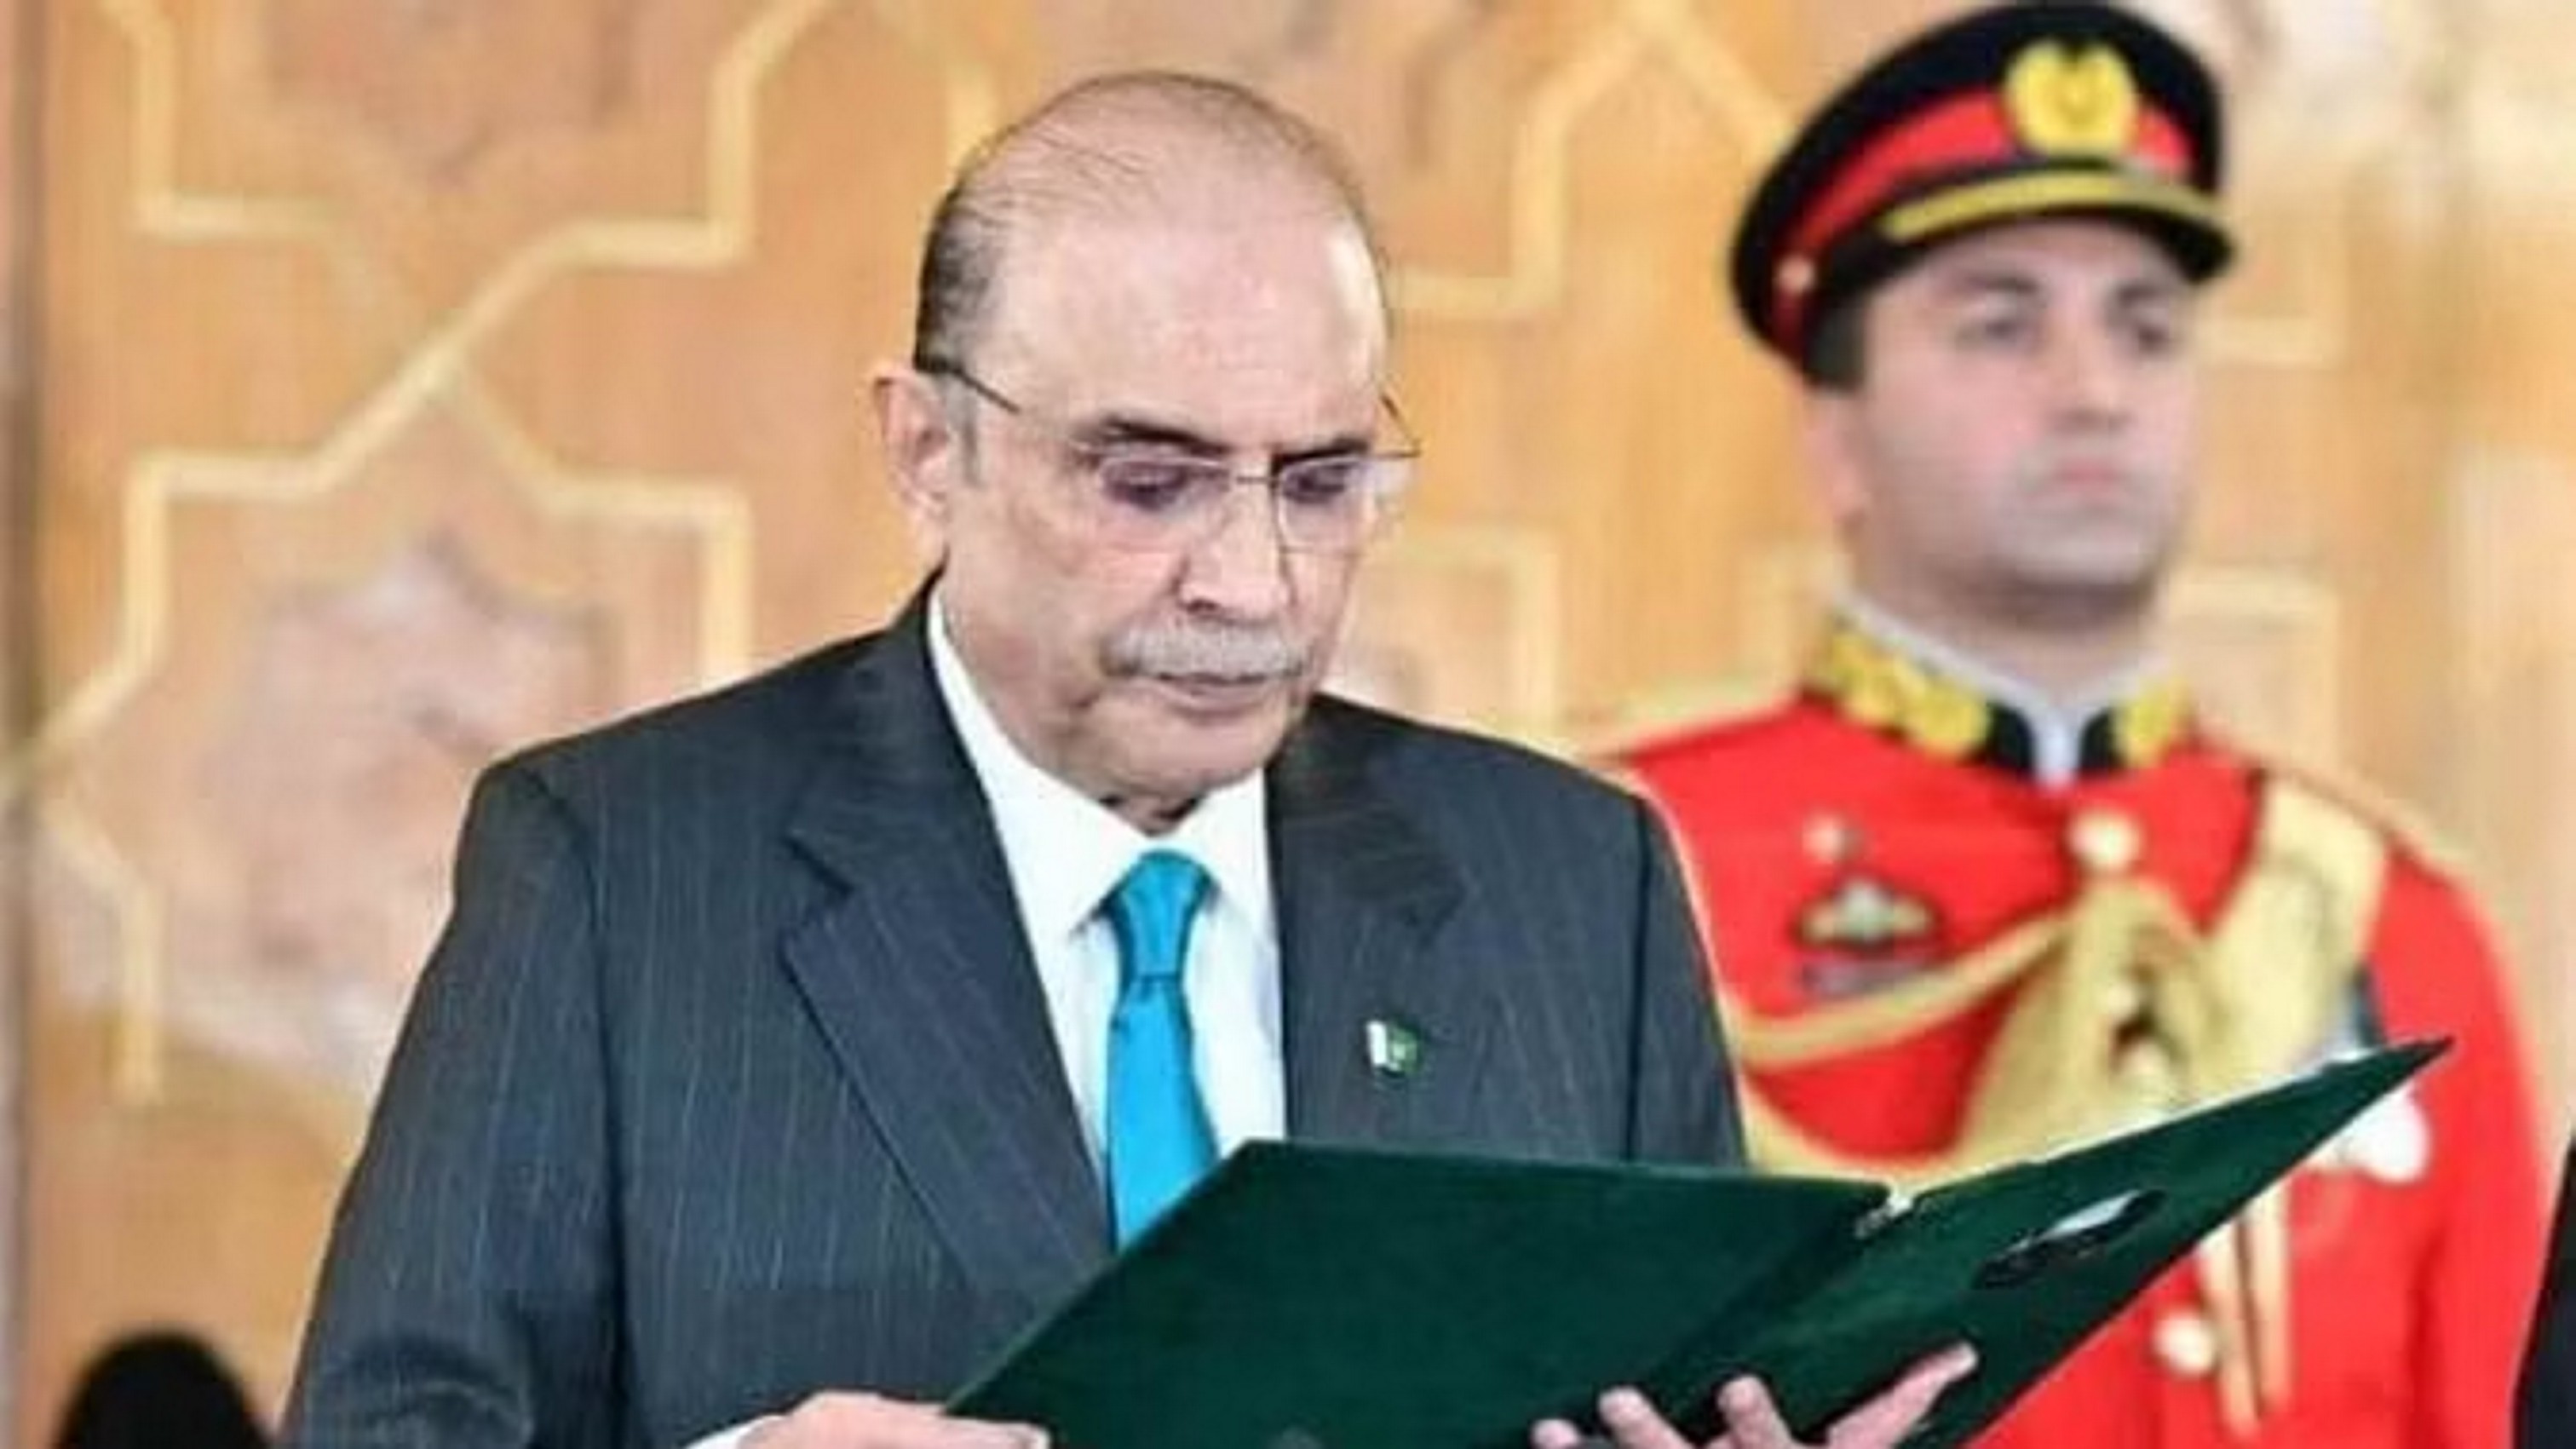 राष्ट्रपति जरदारी के अभिभाषण पर हंगामा, संसद में लगे 'गो जरदारी गो' के नारे